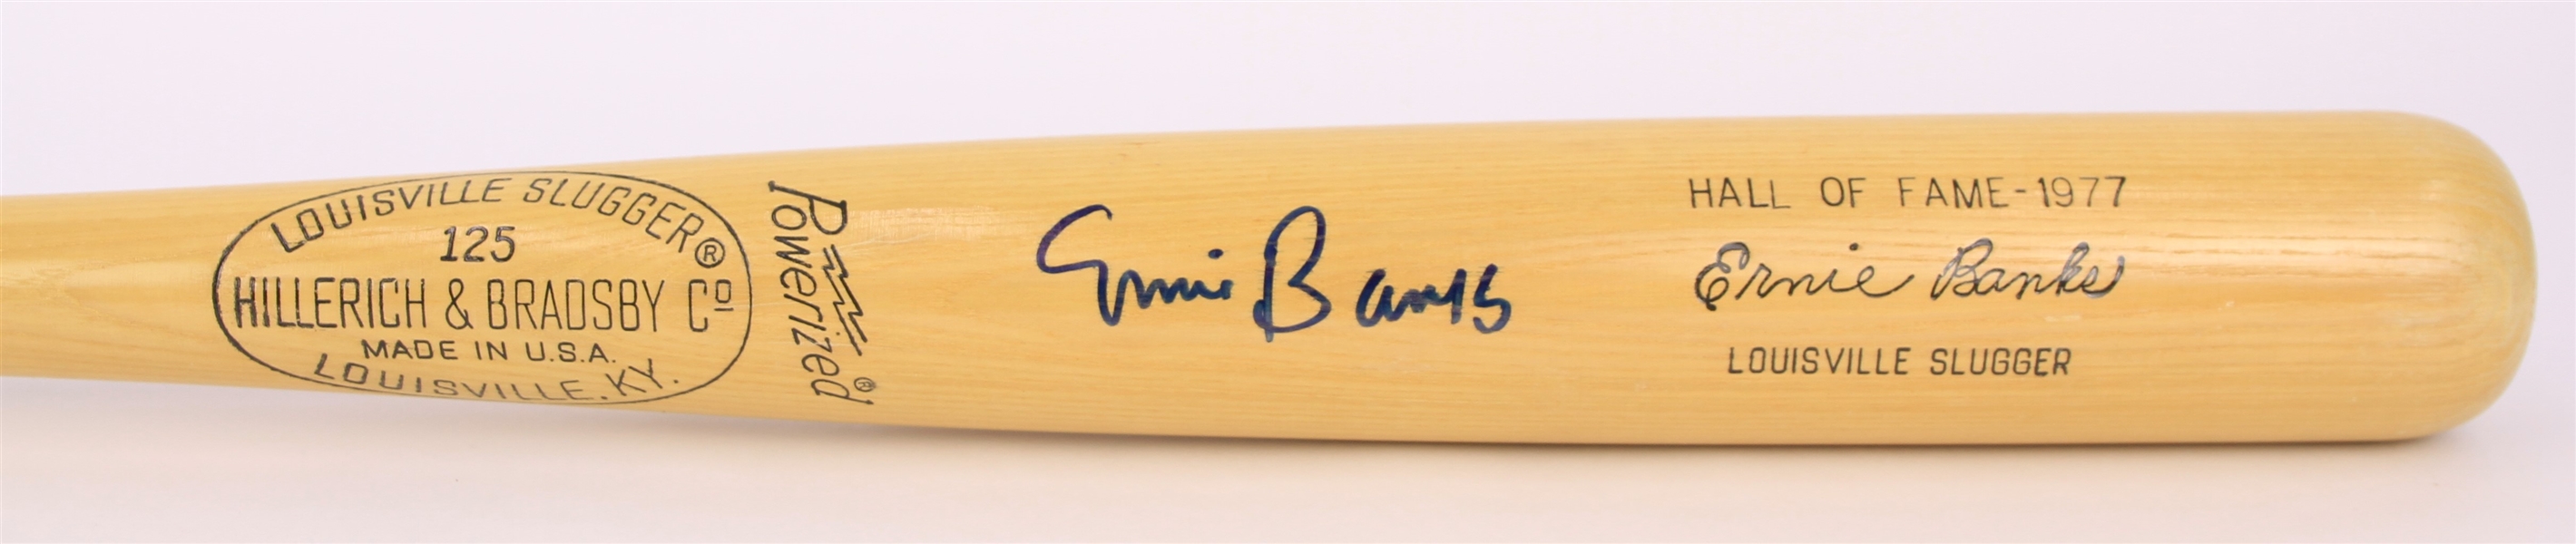 1977 Ernie Banks Chicago Cubs Signed H&B Louisville Slugger Commemorative Hall of Fame Bat (JSA)